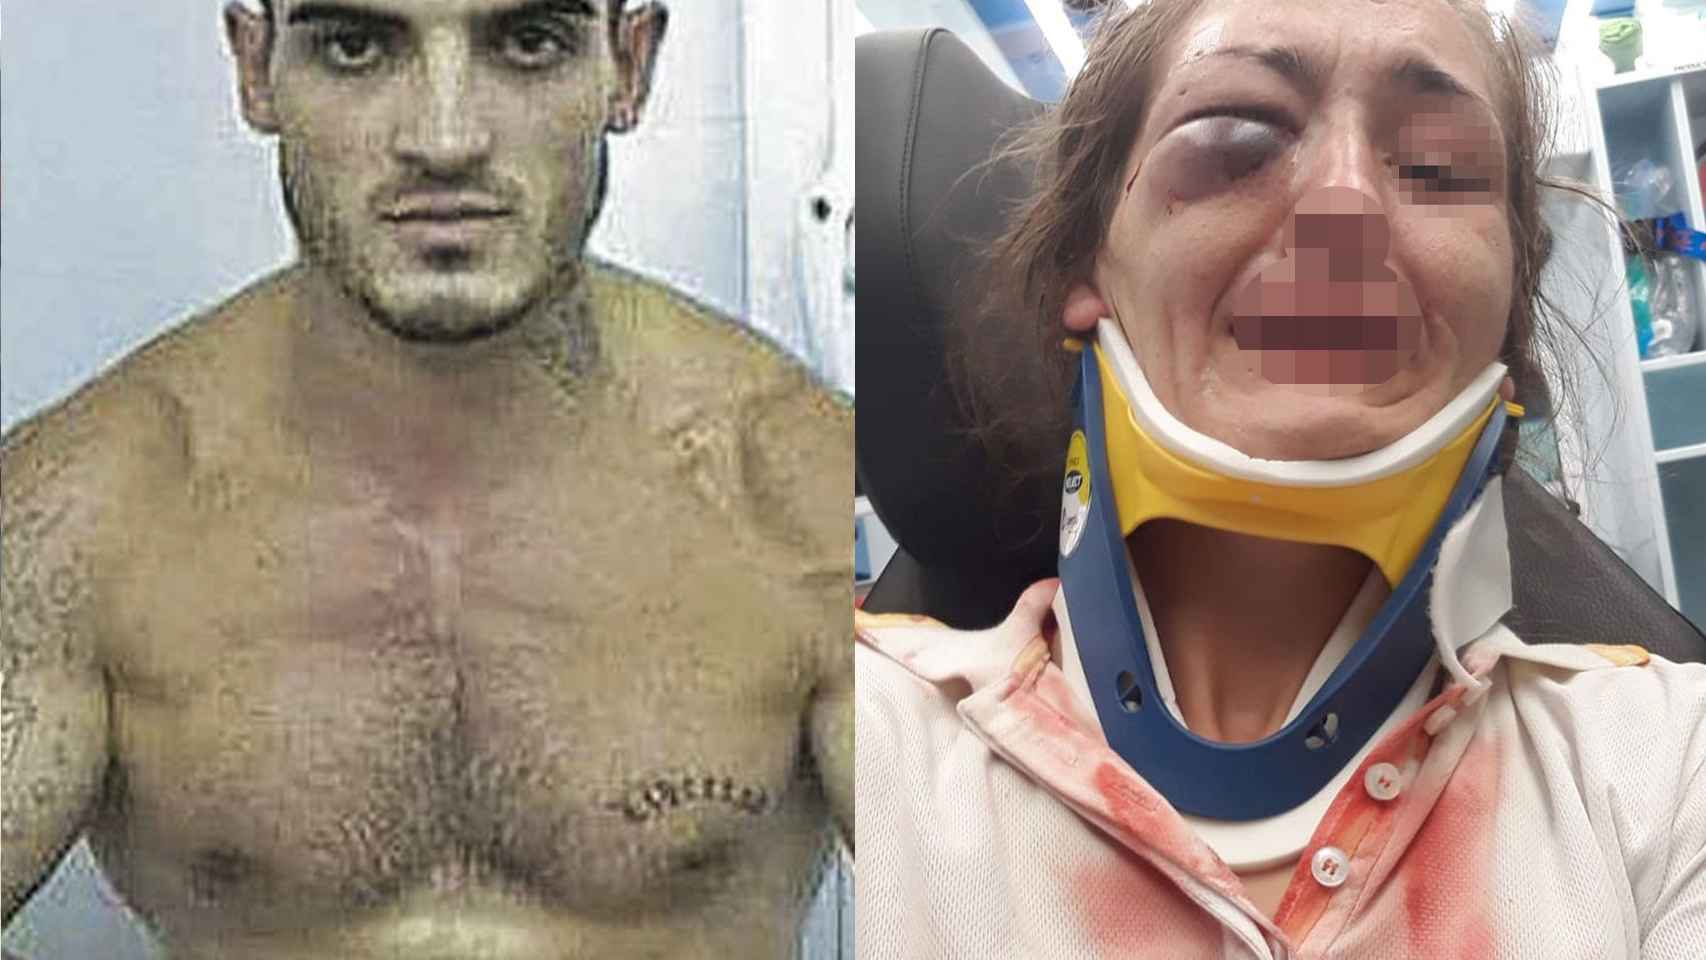 La brutal paliza que el boxeador Arnau propinó a su novia de Mallorca “Casi me mata” imagen